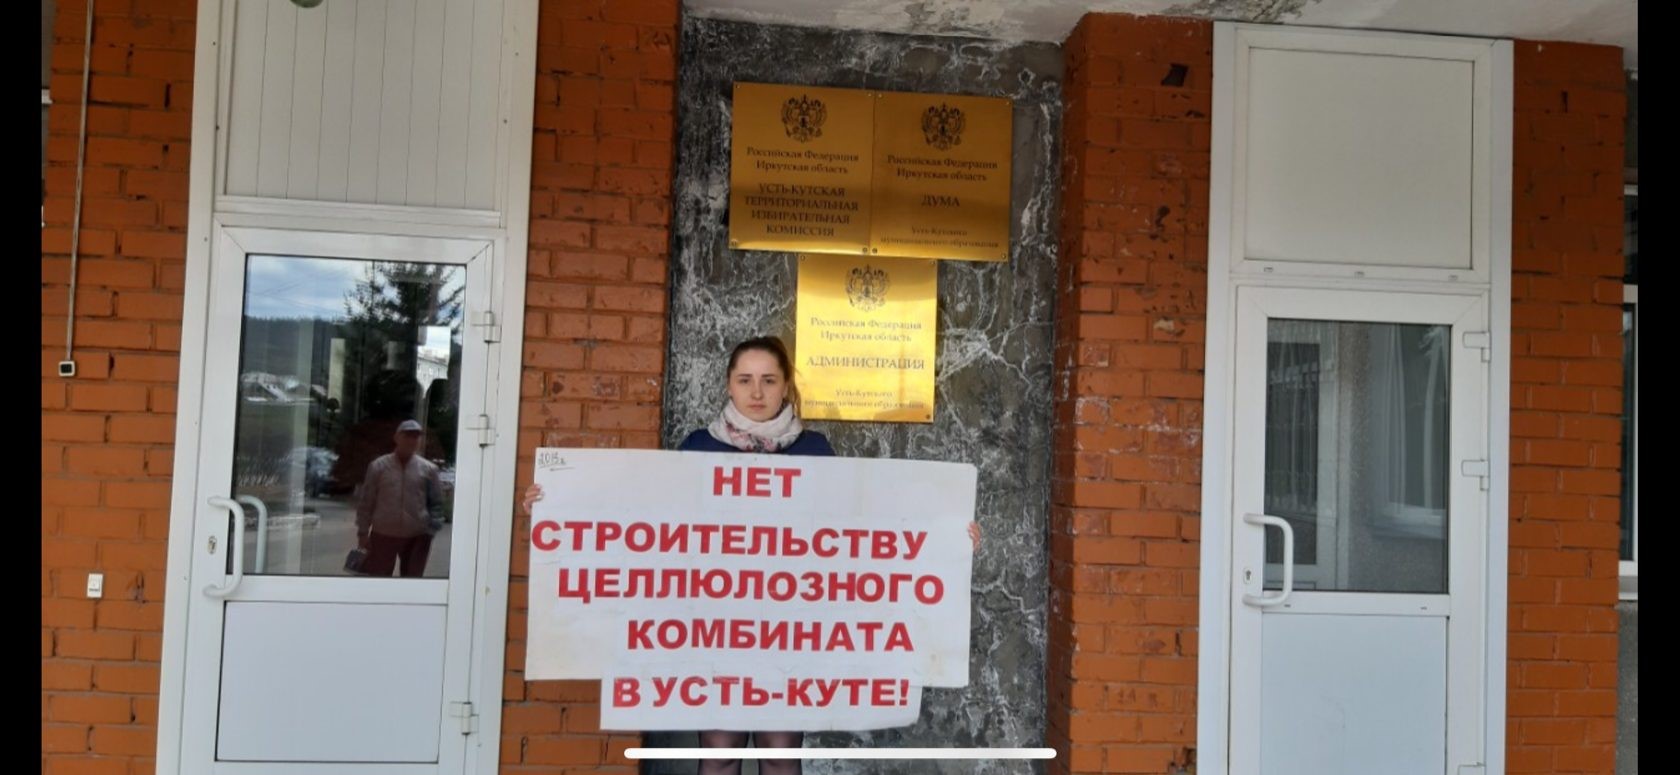 В Усть-Куте загорелся офис активистов, выступающих против строительства ЦБК на Лене